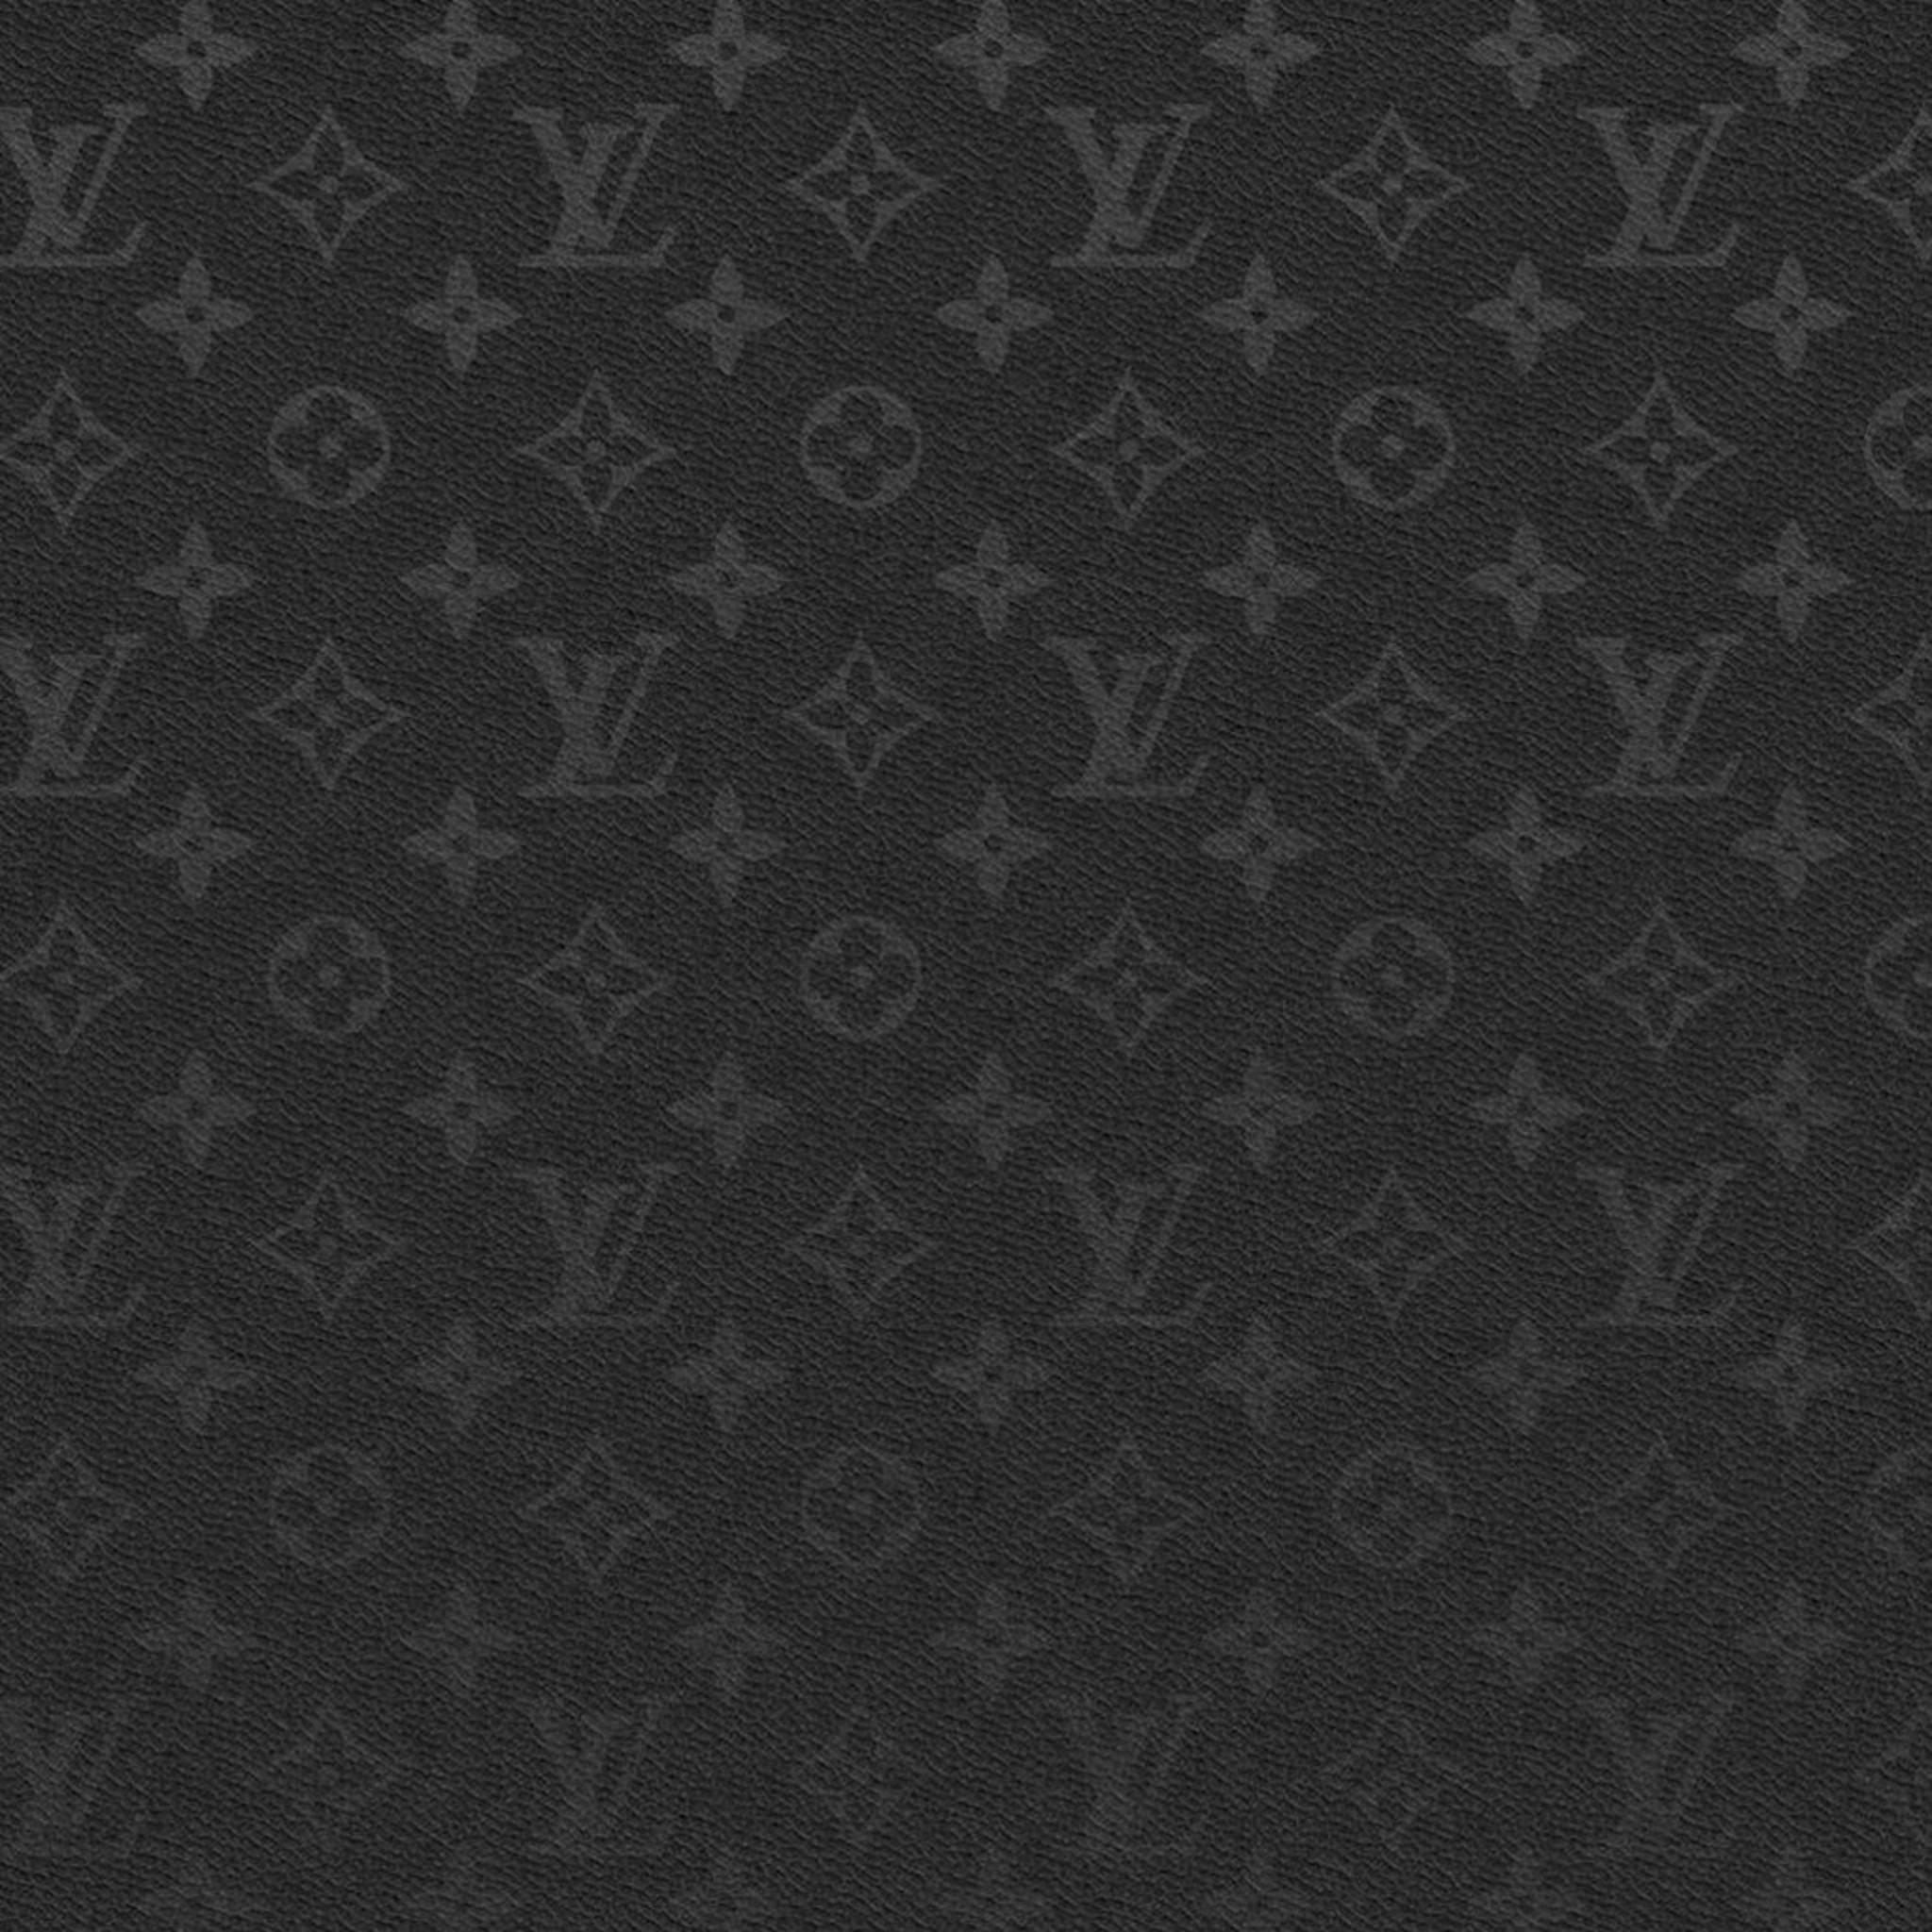 Ripndip x LV, black and white pattern, louis vuitton, louis vuitton pattern,  HD phone wallpaper